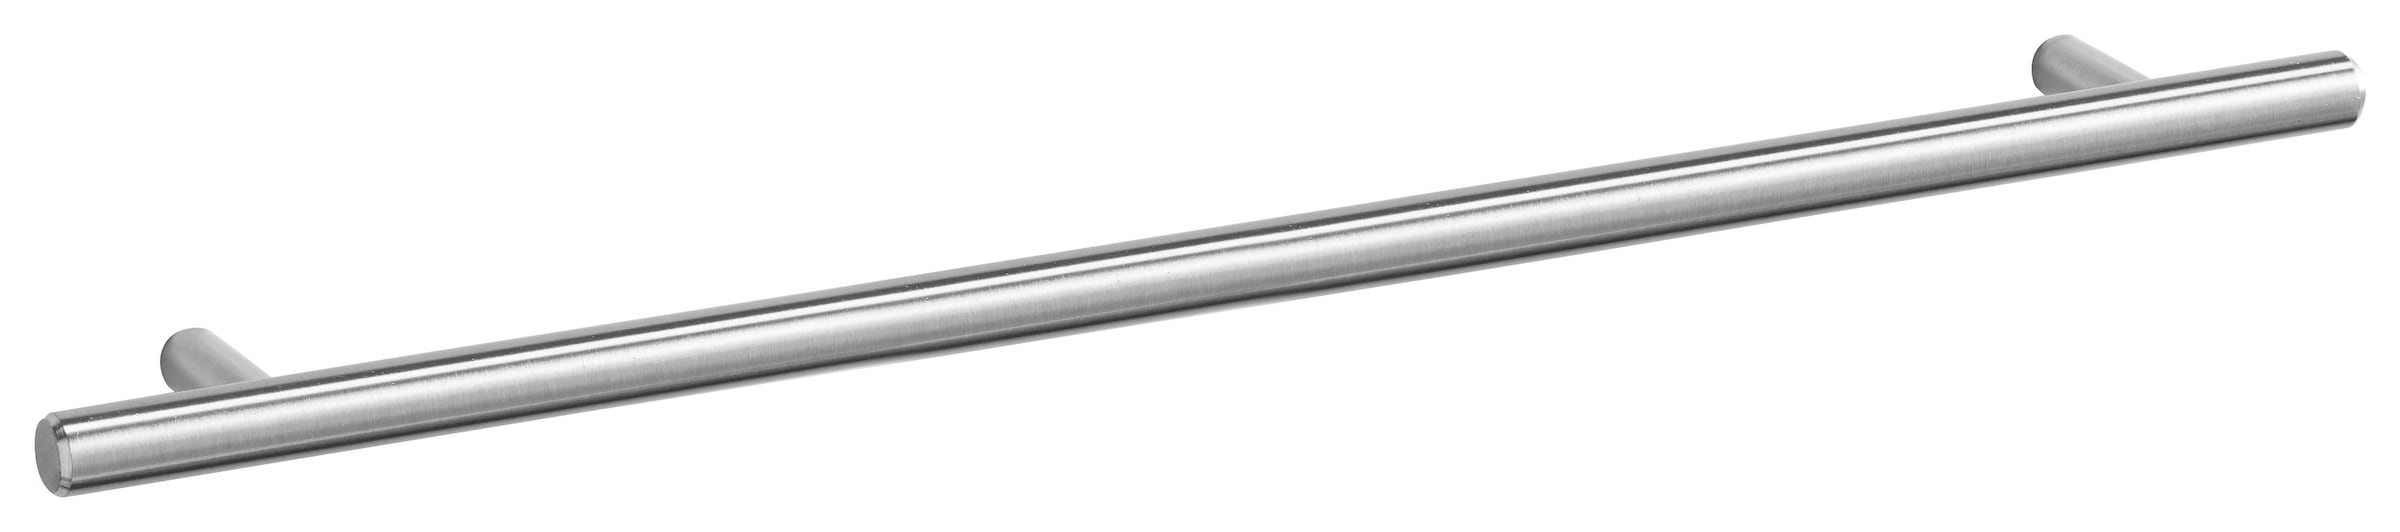 OPTIFIT Hängeschrank »Bern«, Breite 40 cm, 70 cm hoch, mit 1 Tür, mit Metallgriff